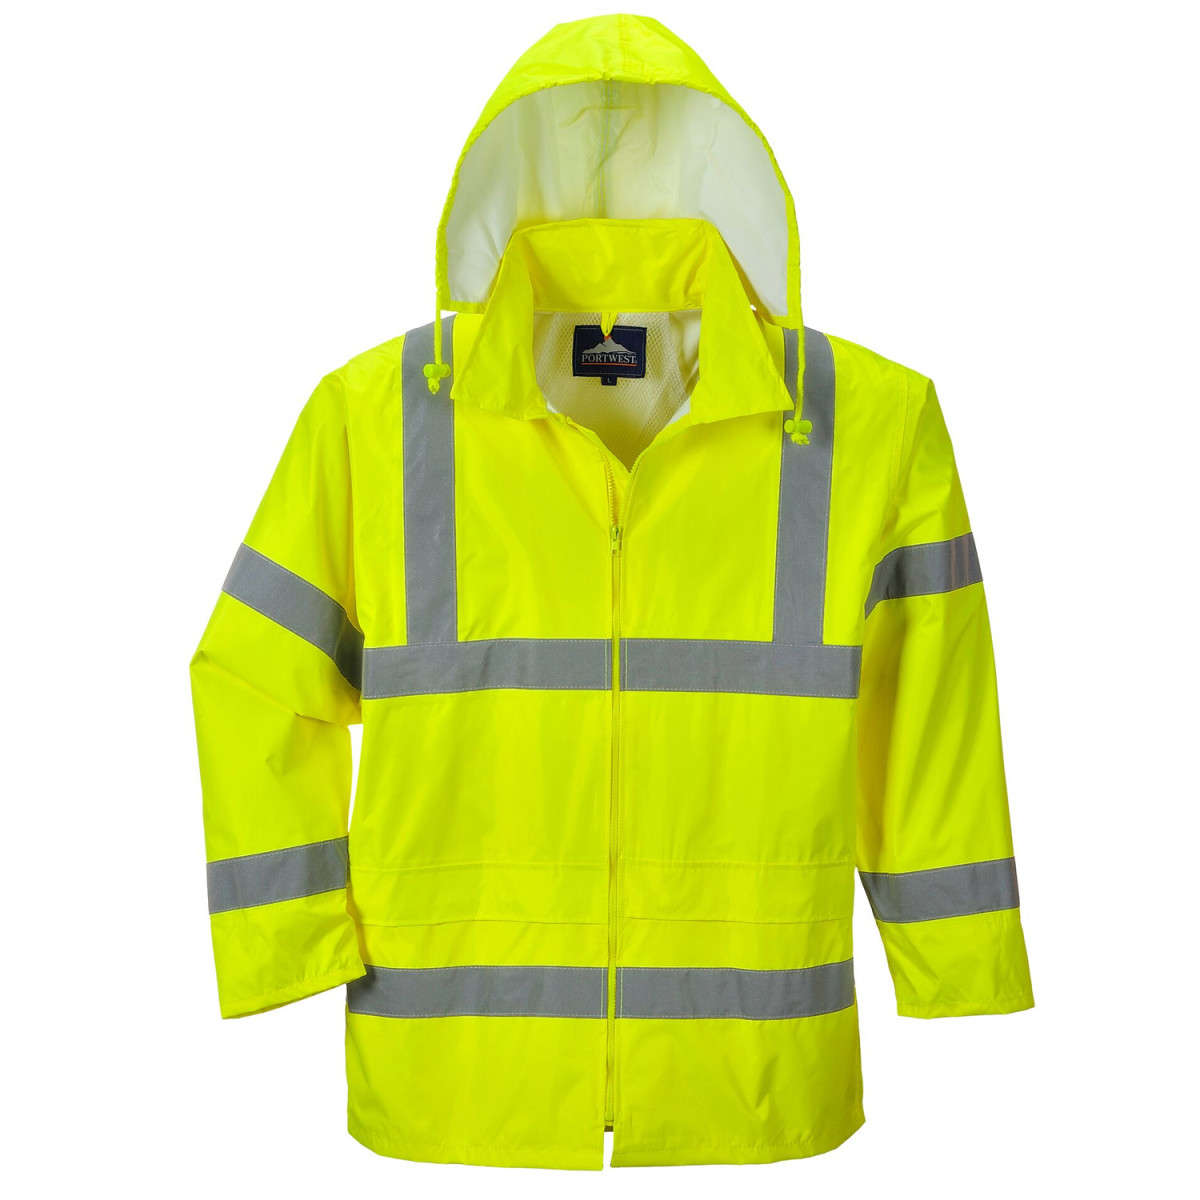 Regenjacke Warnschutz-Gelb hier im Shop - Arbeitsklamotten.de, 34,90 € | Regenjacken